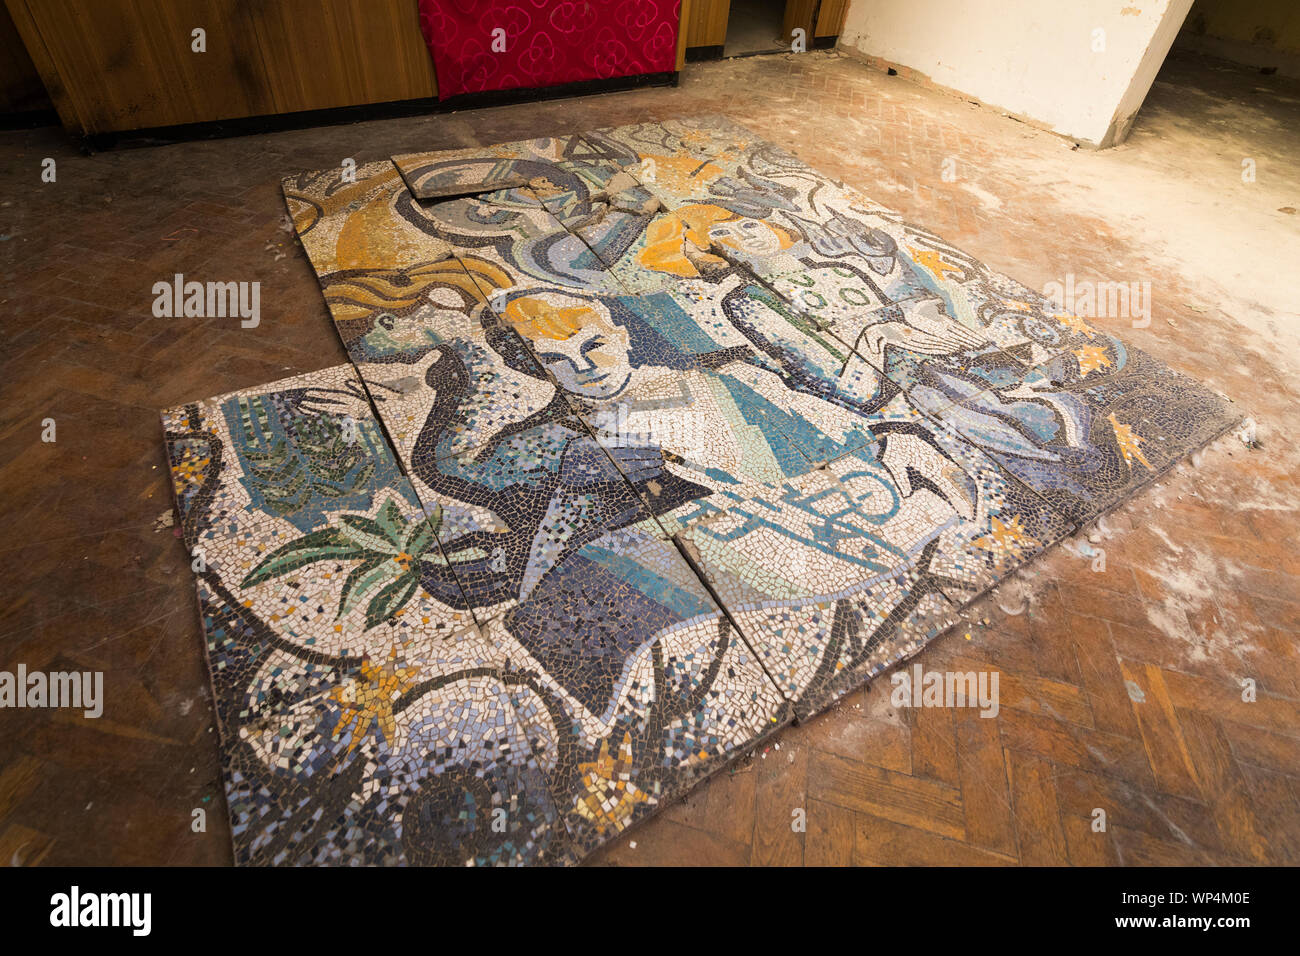 L'art de la mosaïque dans l'ancien communiste siège historique des casernes, 'Haus der Offiziere' abandonné par l'armée russe en 1994, Wünsdorf Allemagne Banque D'Images